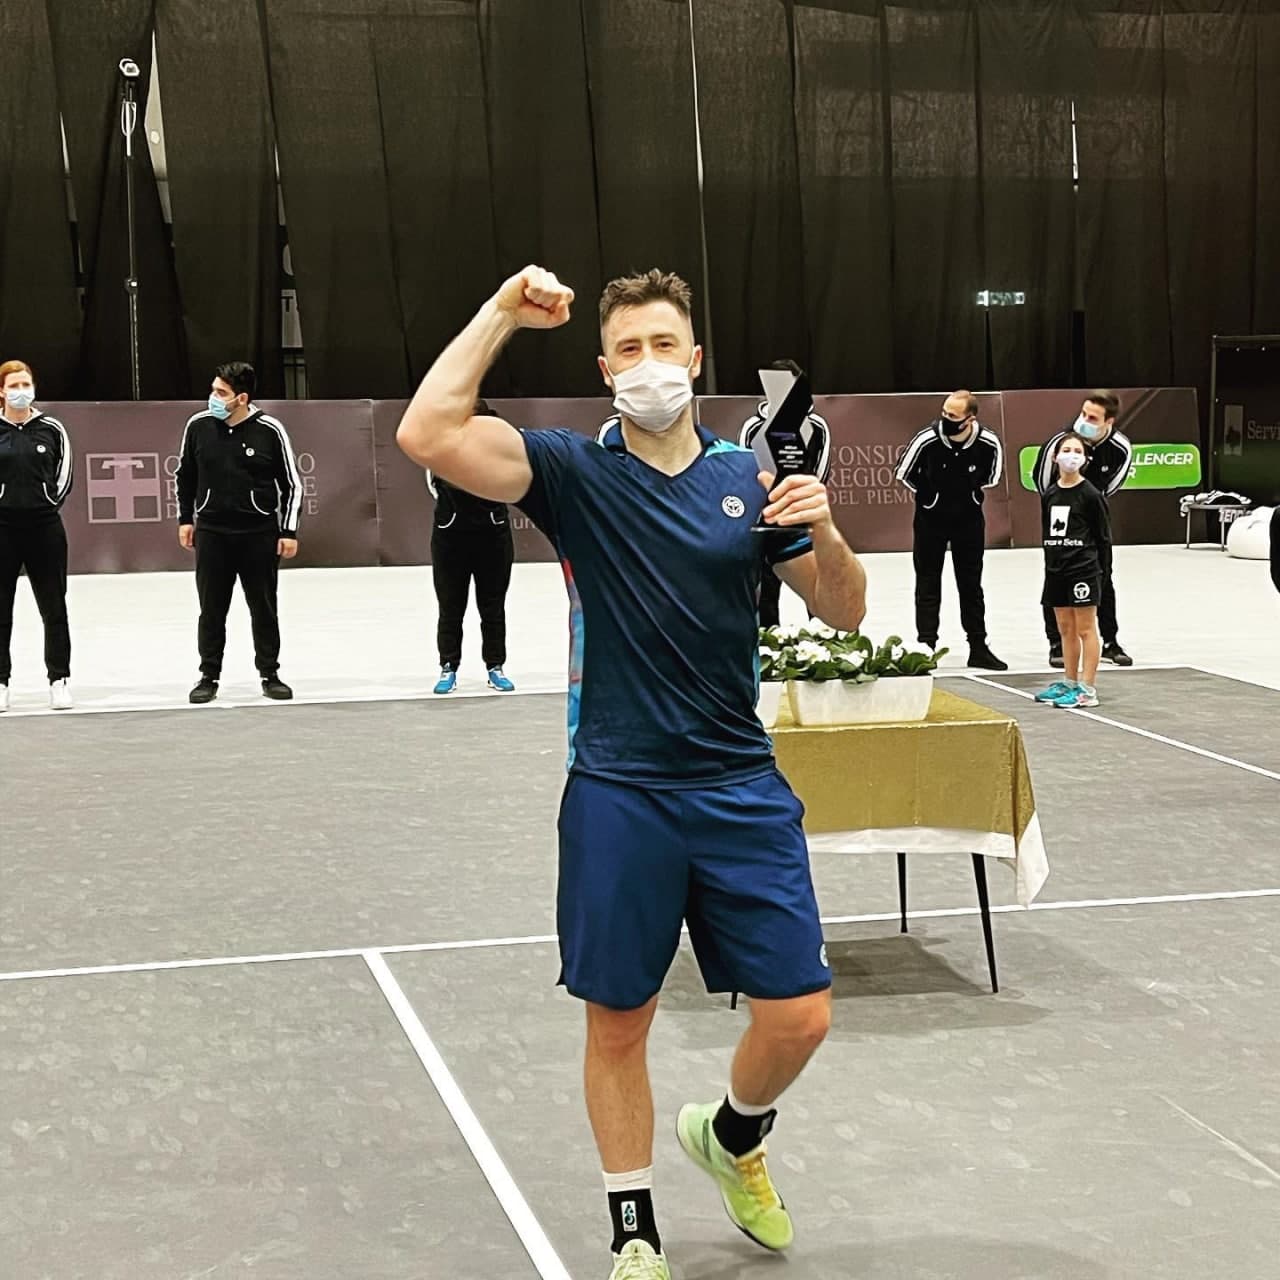 Украинский спортсмен Марченко разгромил легенду мирового тенниса Энди Маррея в финале турнира в Италии. Фото: Facebook